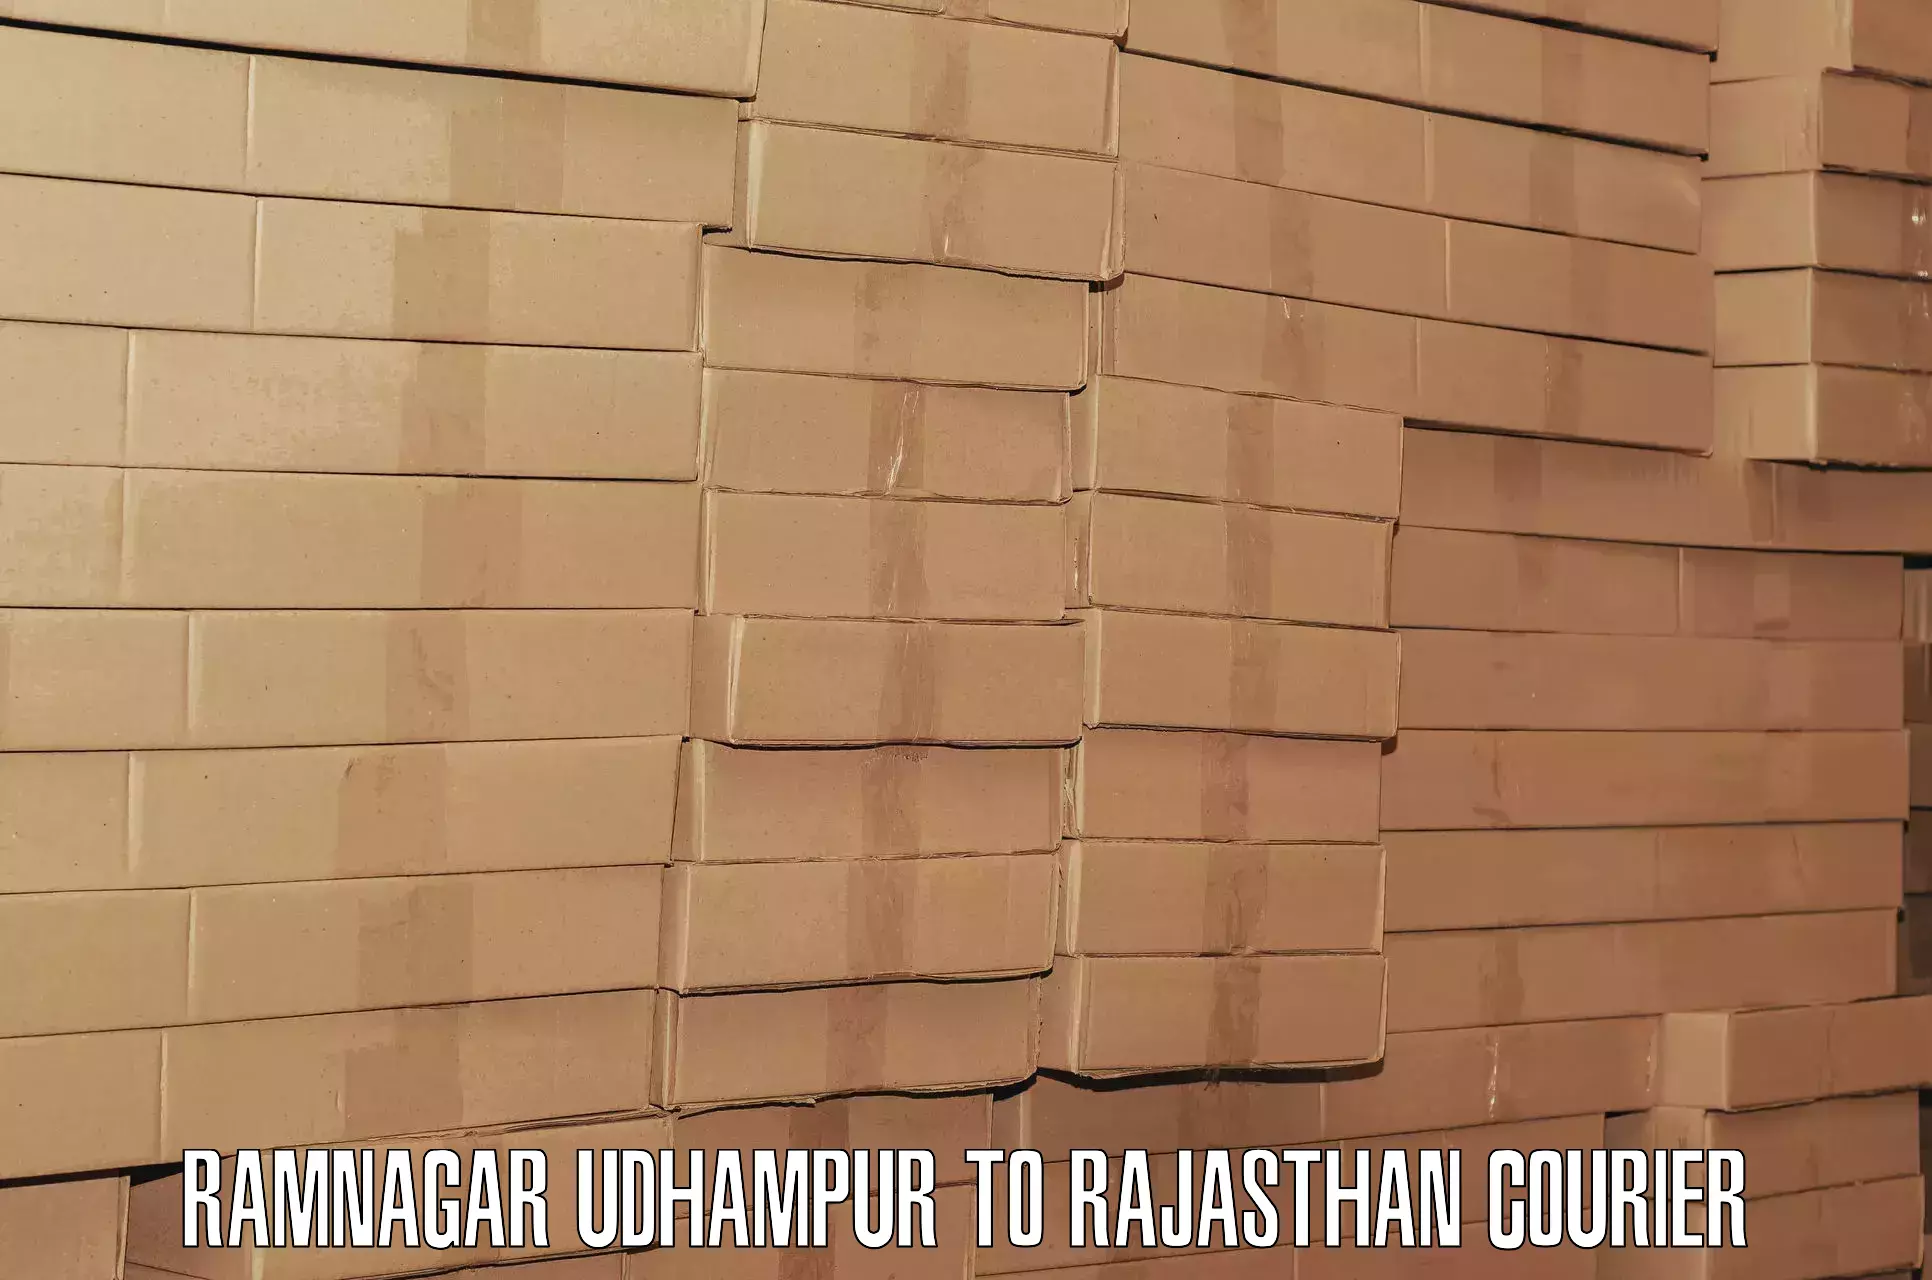 Digital baggage courier in Ramnagar Udhampur to Bhatewar